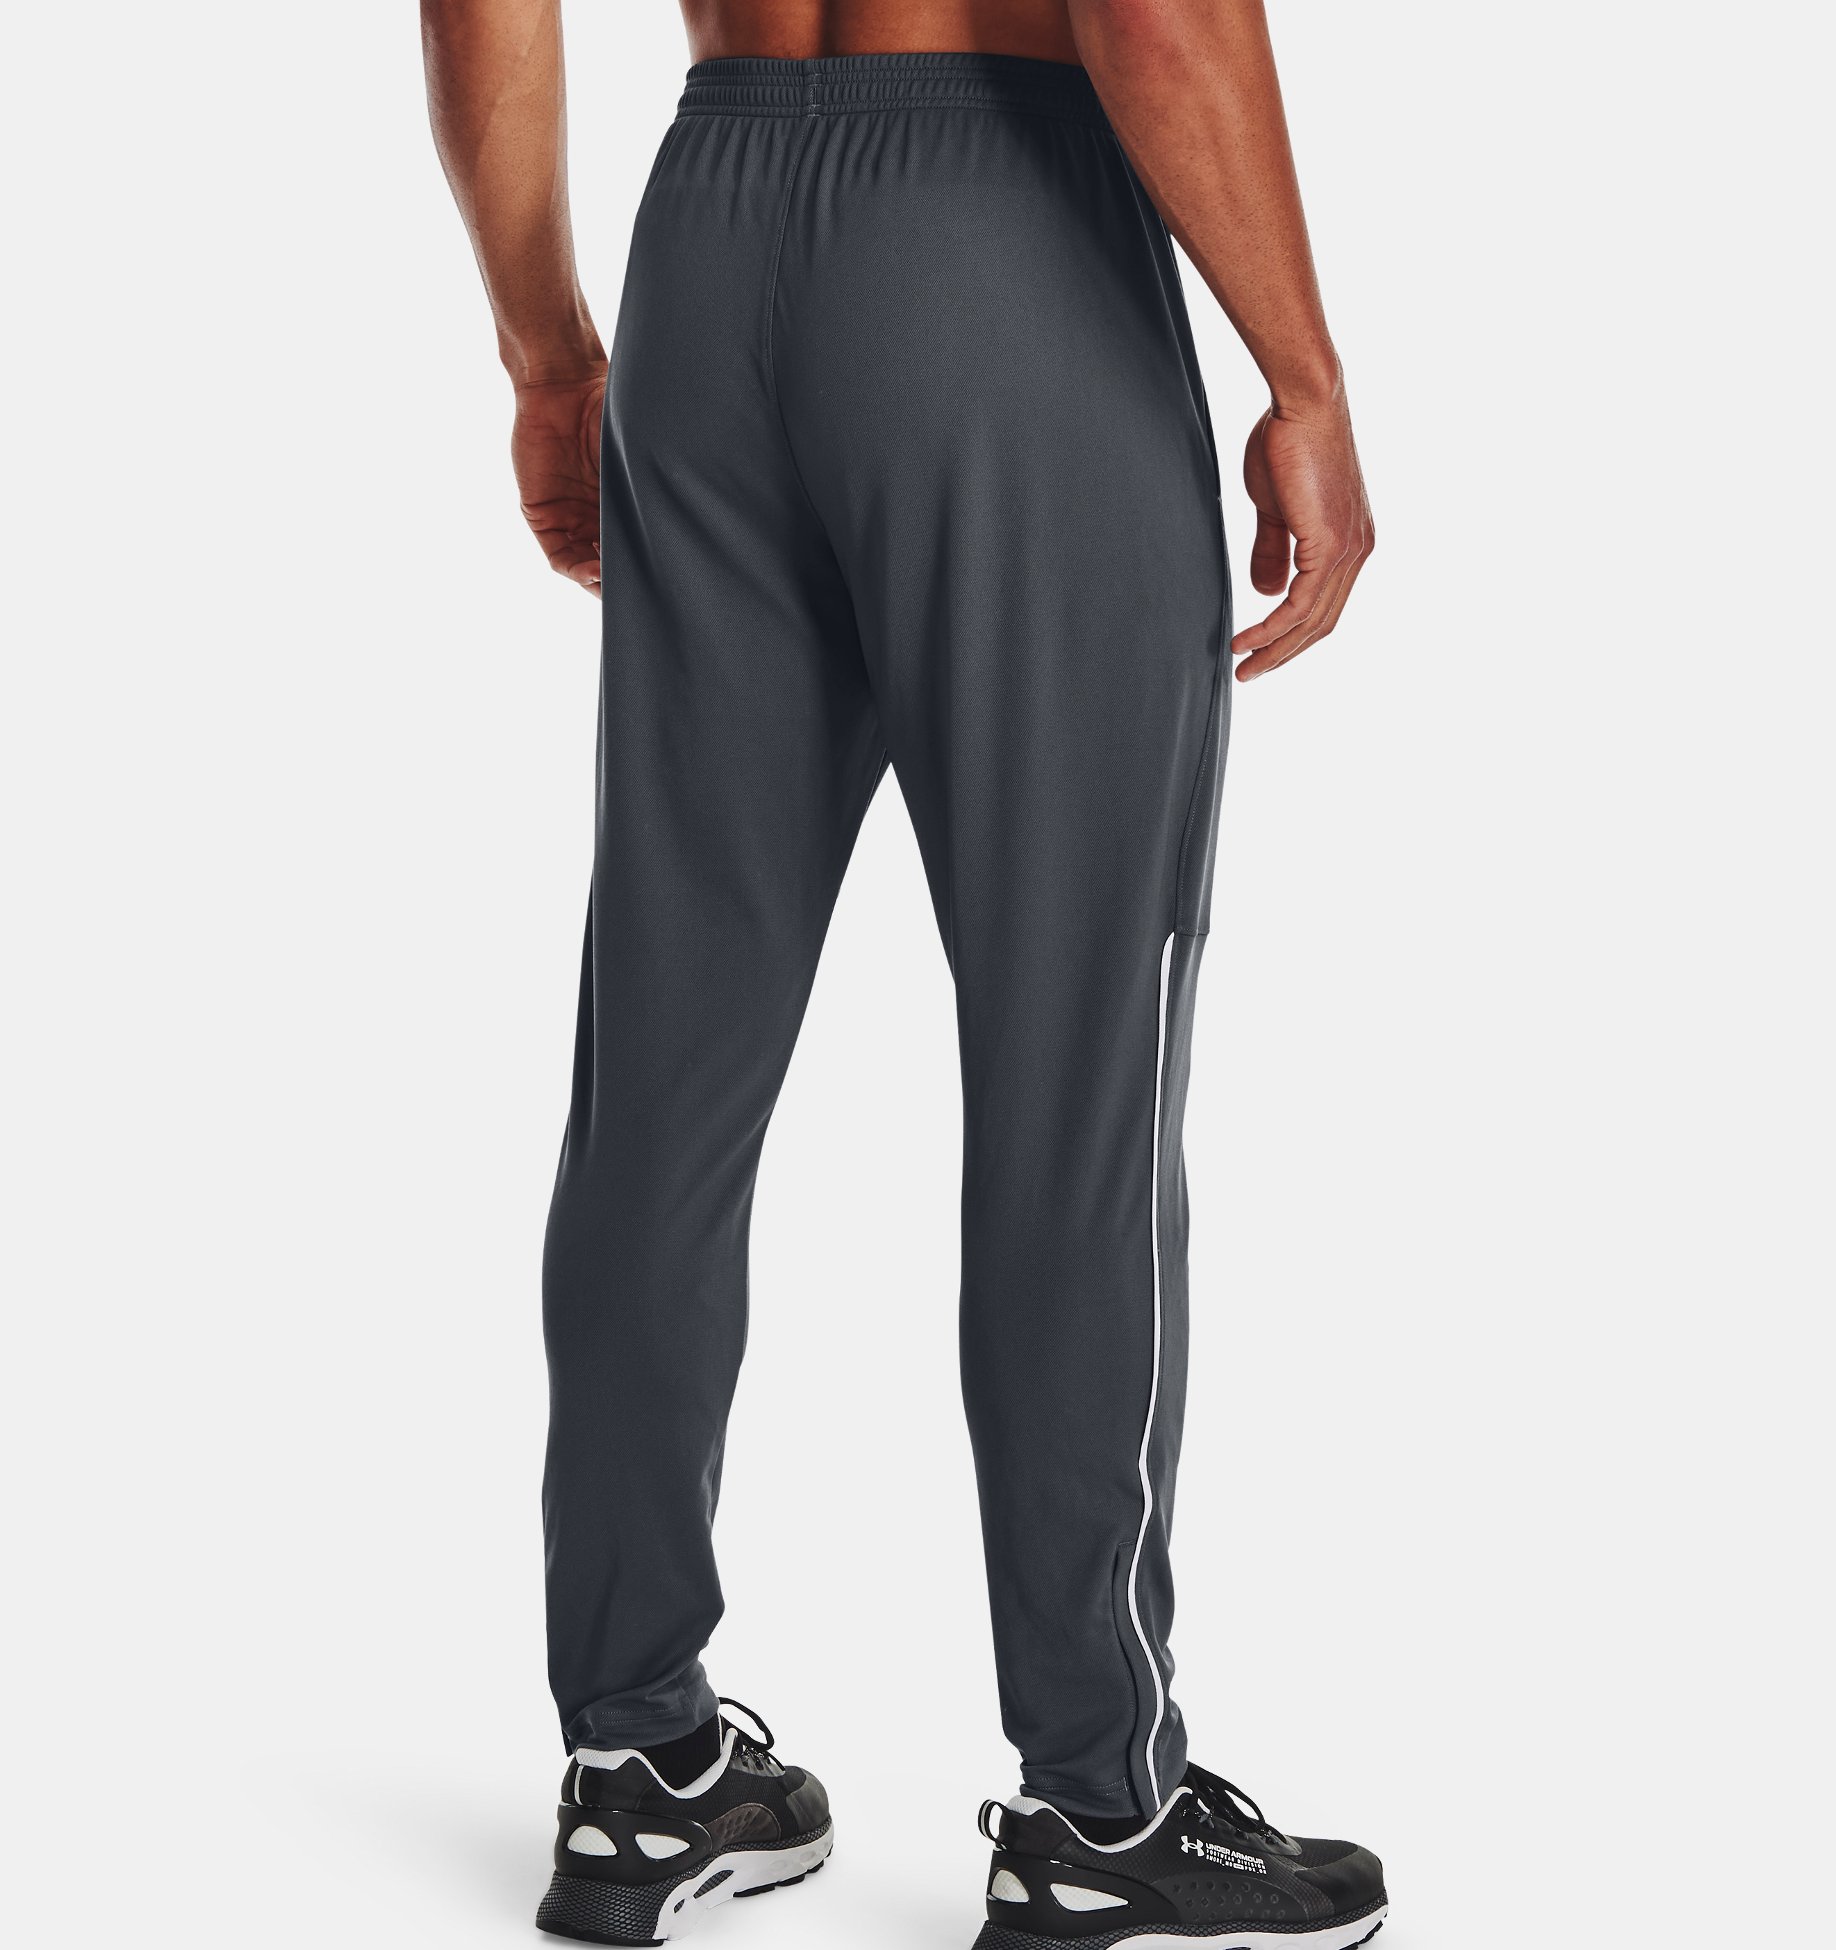 Black / Pitch Gray Under Armour UA MK1 Warmup Pantalon de sport élastique et respirant jogging confortable à poches ouvertes Homme M 